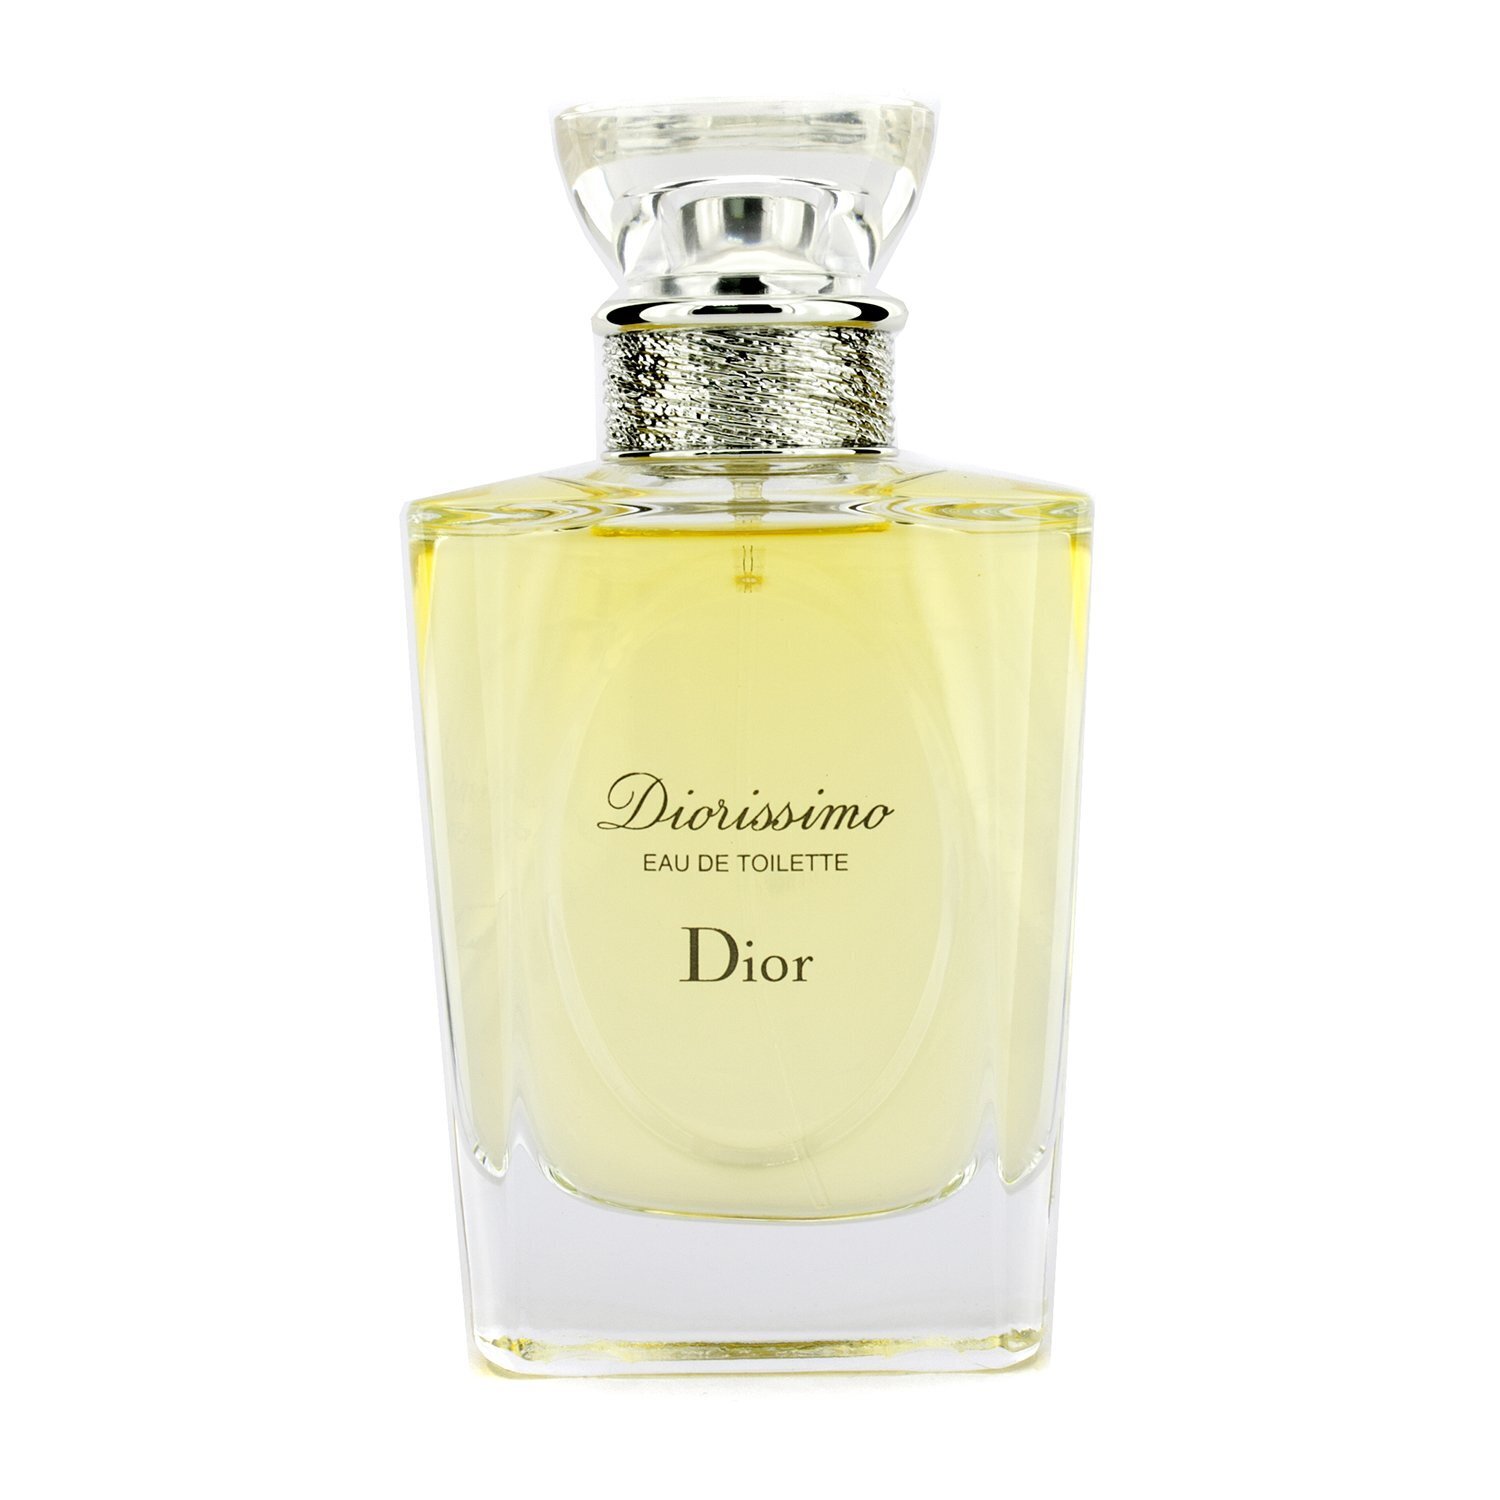 迪奧 Christian Dior - Diorissimo茉莉花女性淡香水